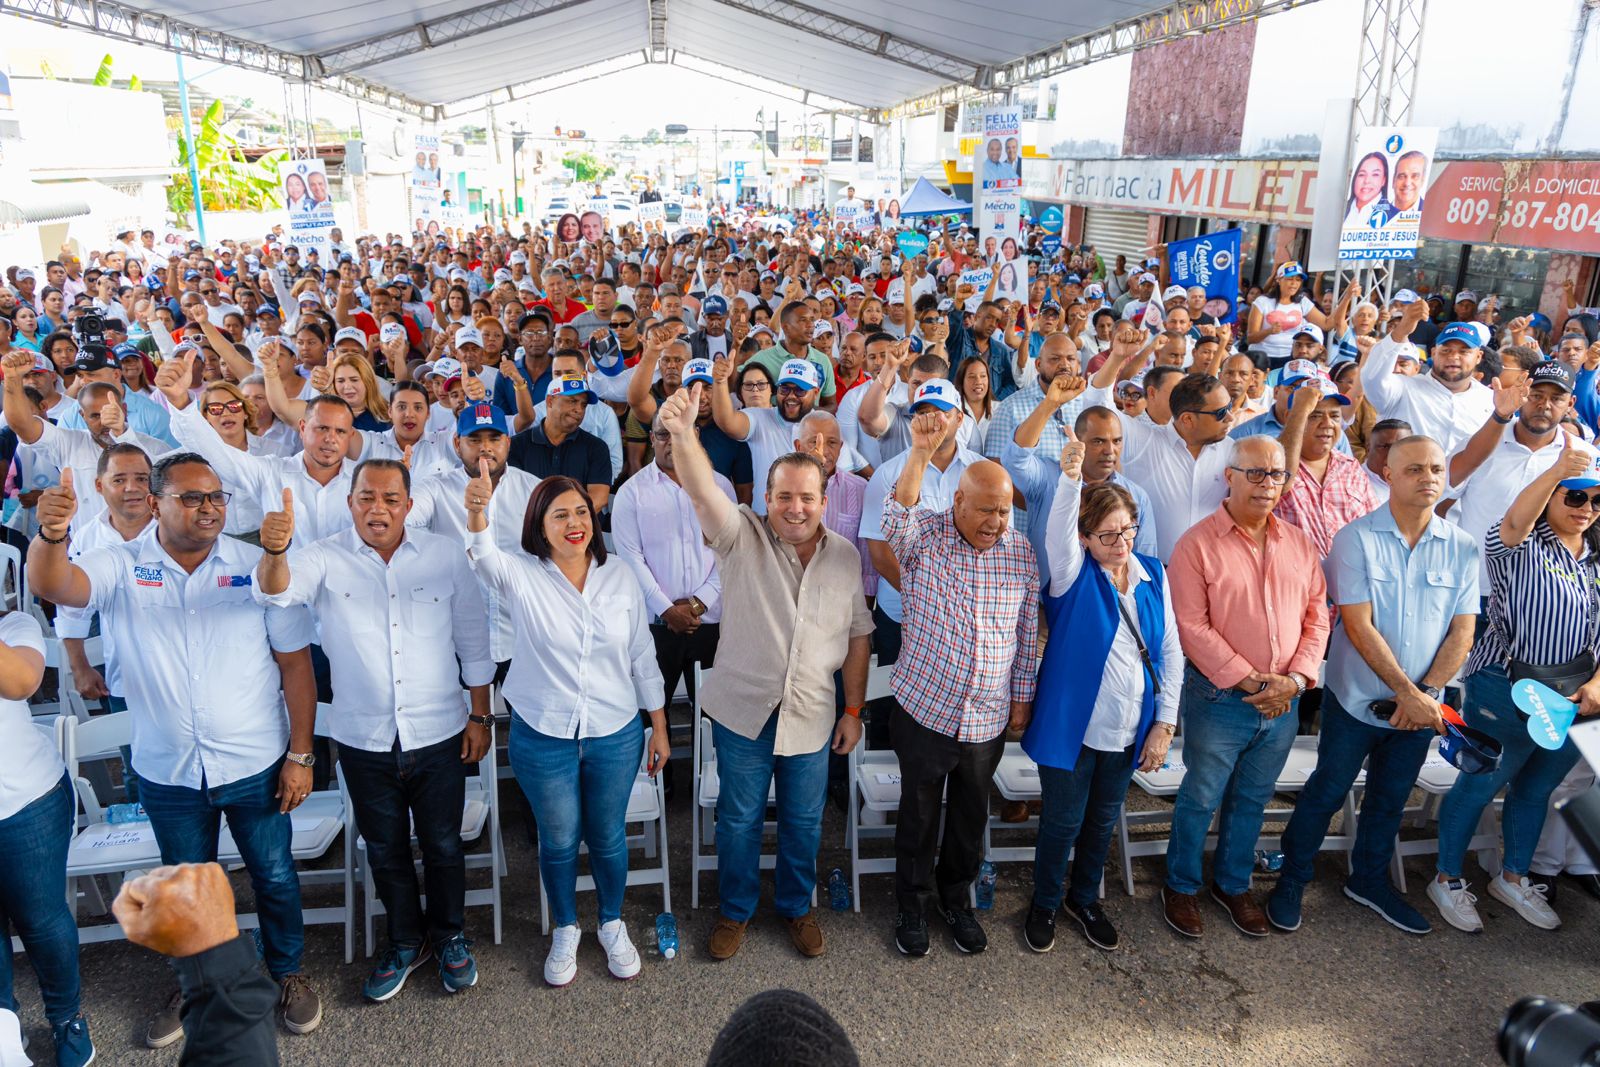 José Paliza recorre 11 provincias en última semana; juramenta dirigentes